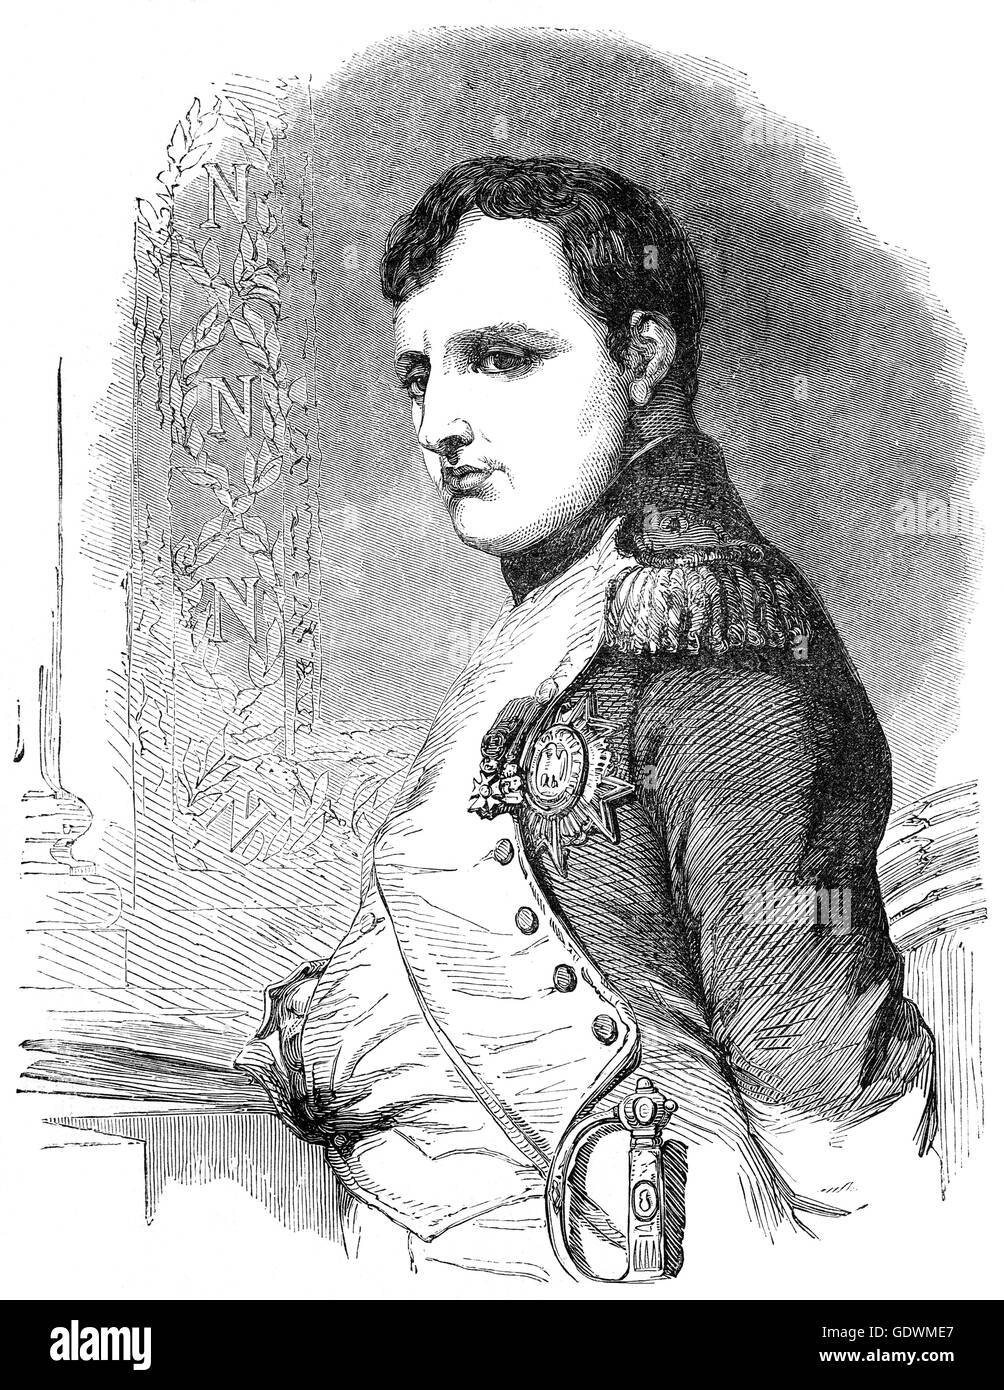 Napoléon Bonaparte (1769 - 1821) era un militare francese e leader politici che hanno salito alla ribalta durante la Rivoluzione francese e il led di diverse campagne di successo durante le guerre rivoluzionarie. Come Napoleone I, fu Imperatore dei Francesi dal 1804 fino al 1814, e di nuovo nel 1815. Foto Stock